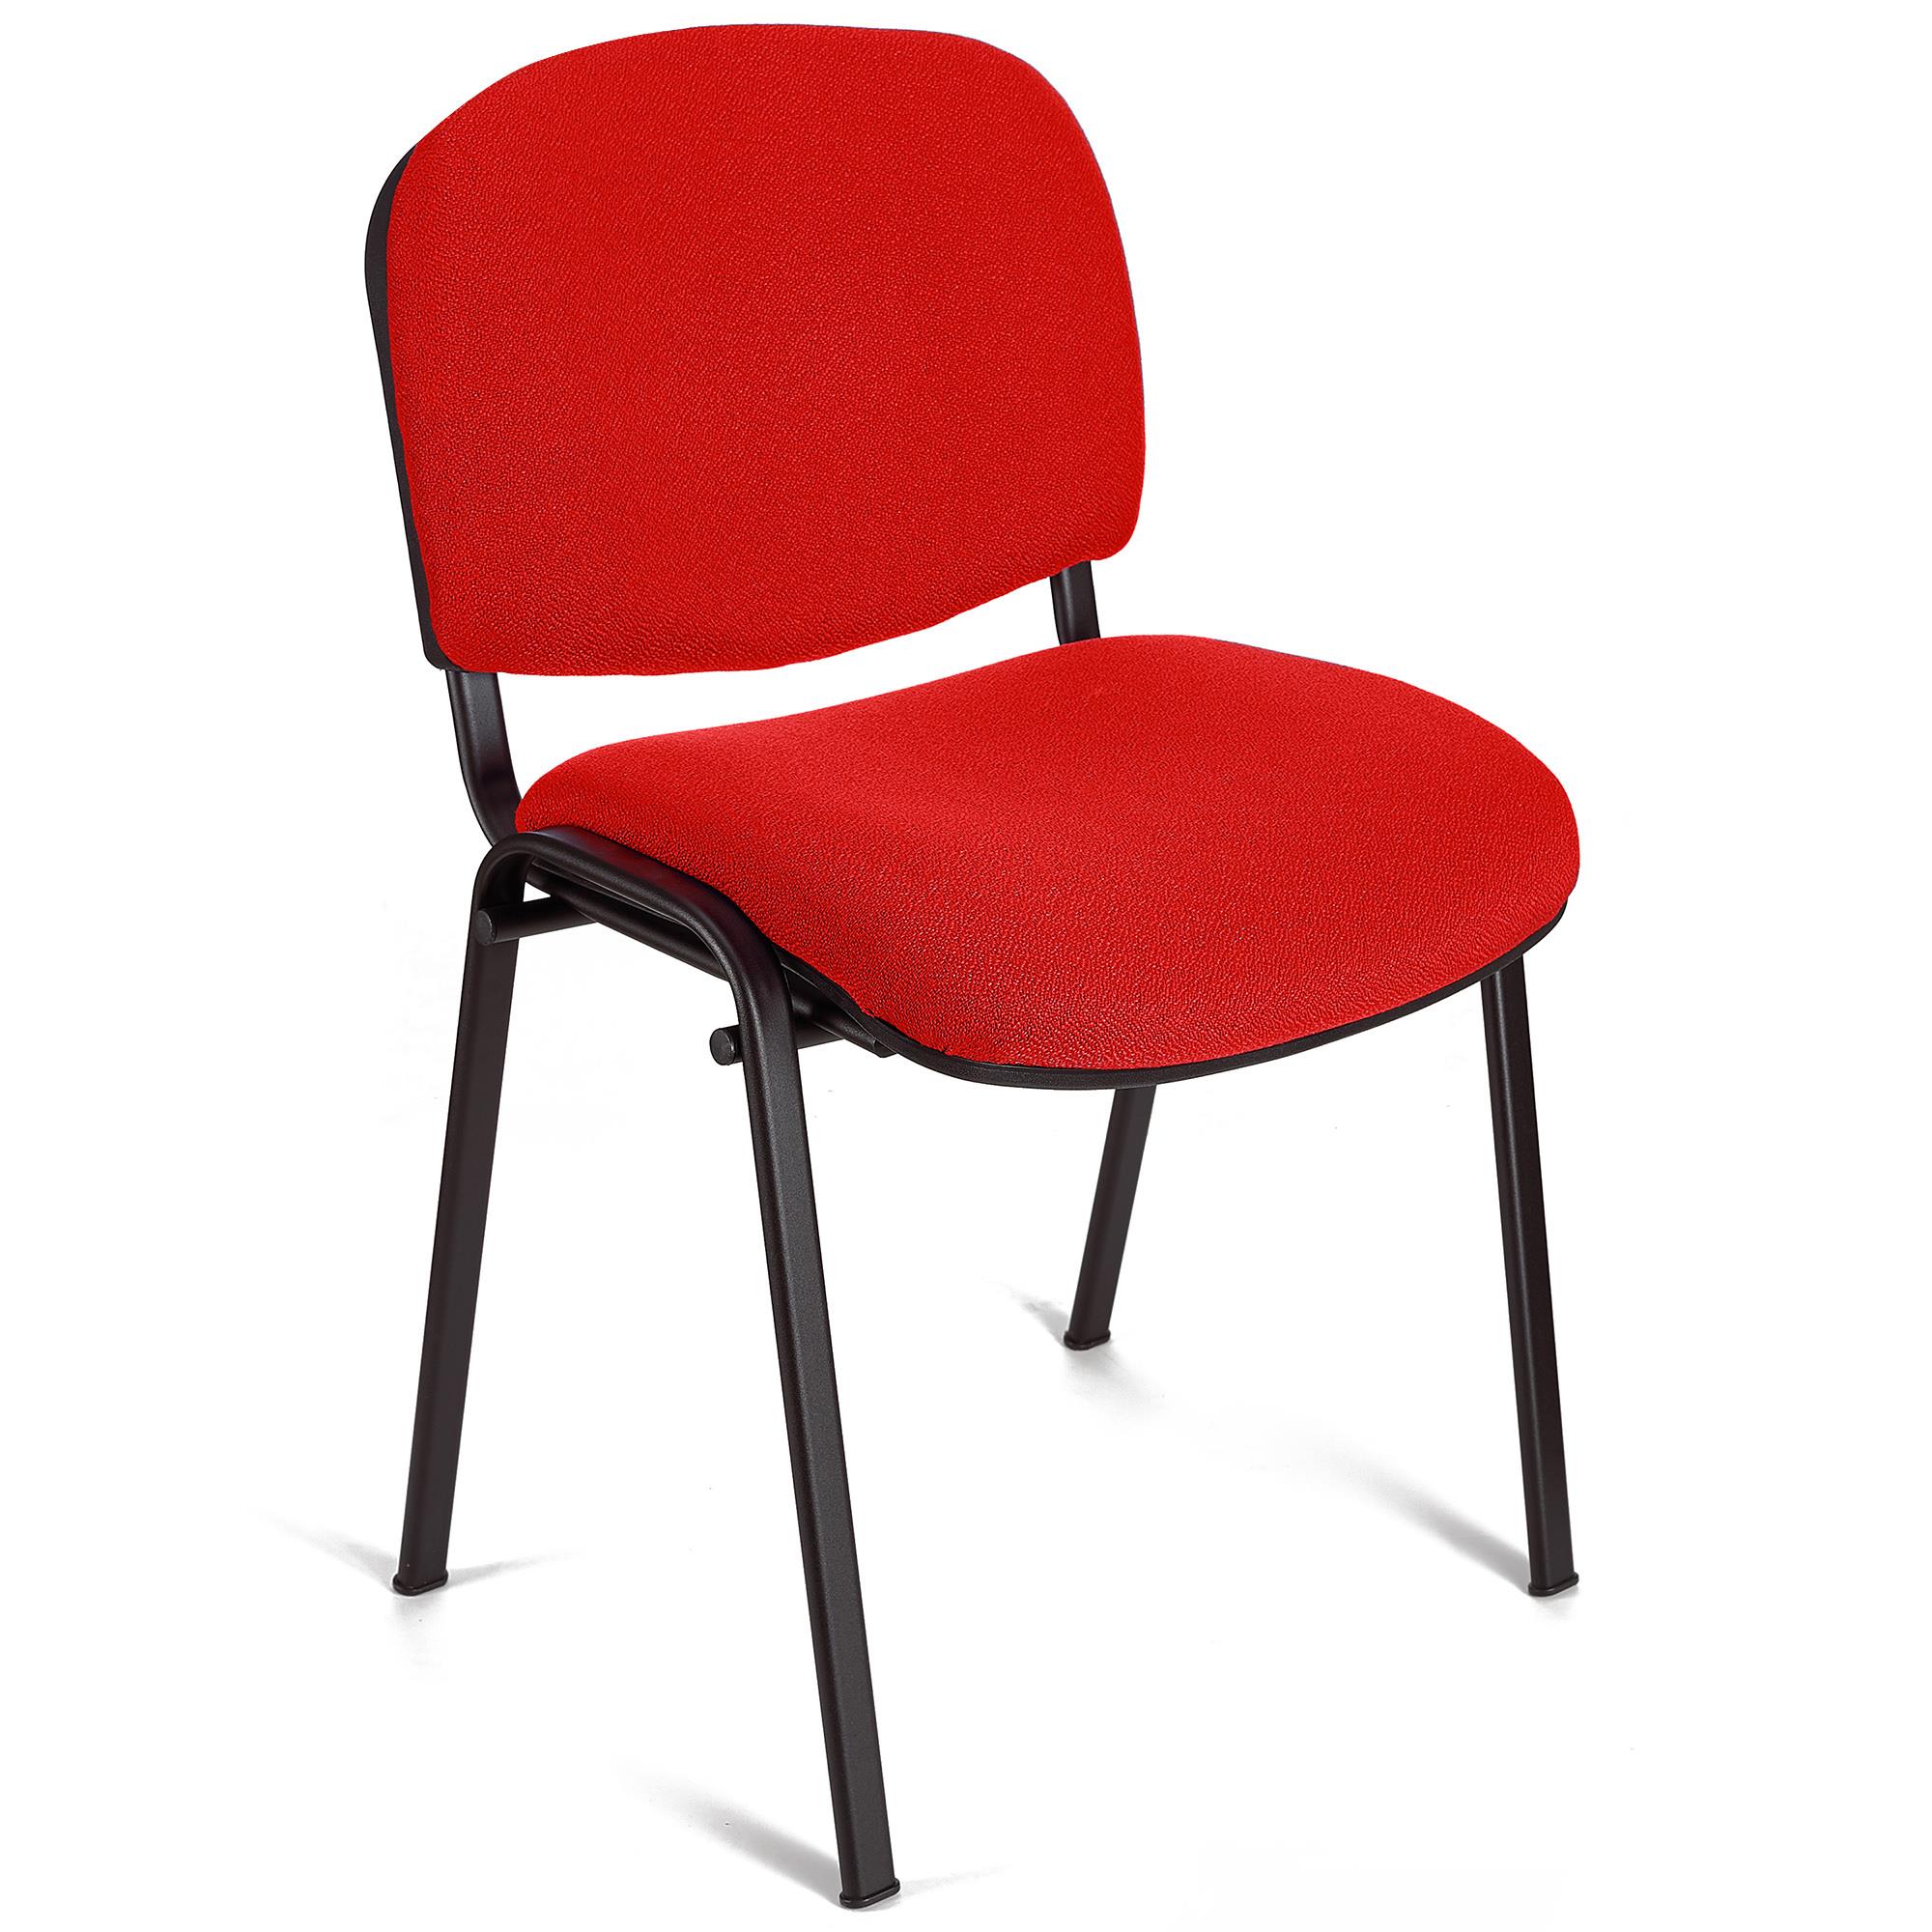 Konferenzstuhl MOBY BASE, bequem und praktisch, stapelbar, Farbe Rot